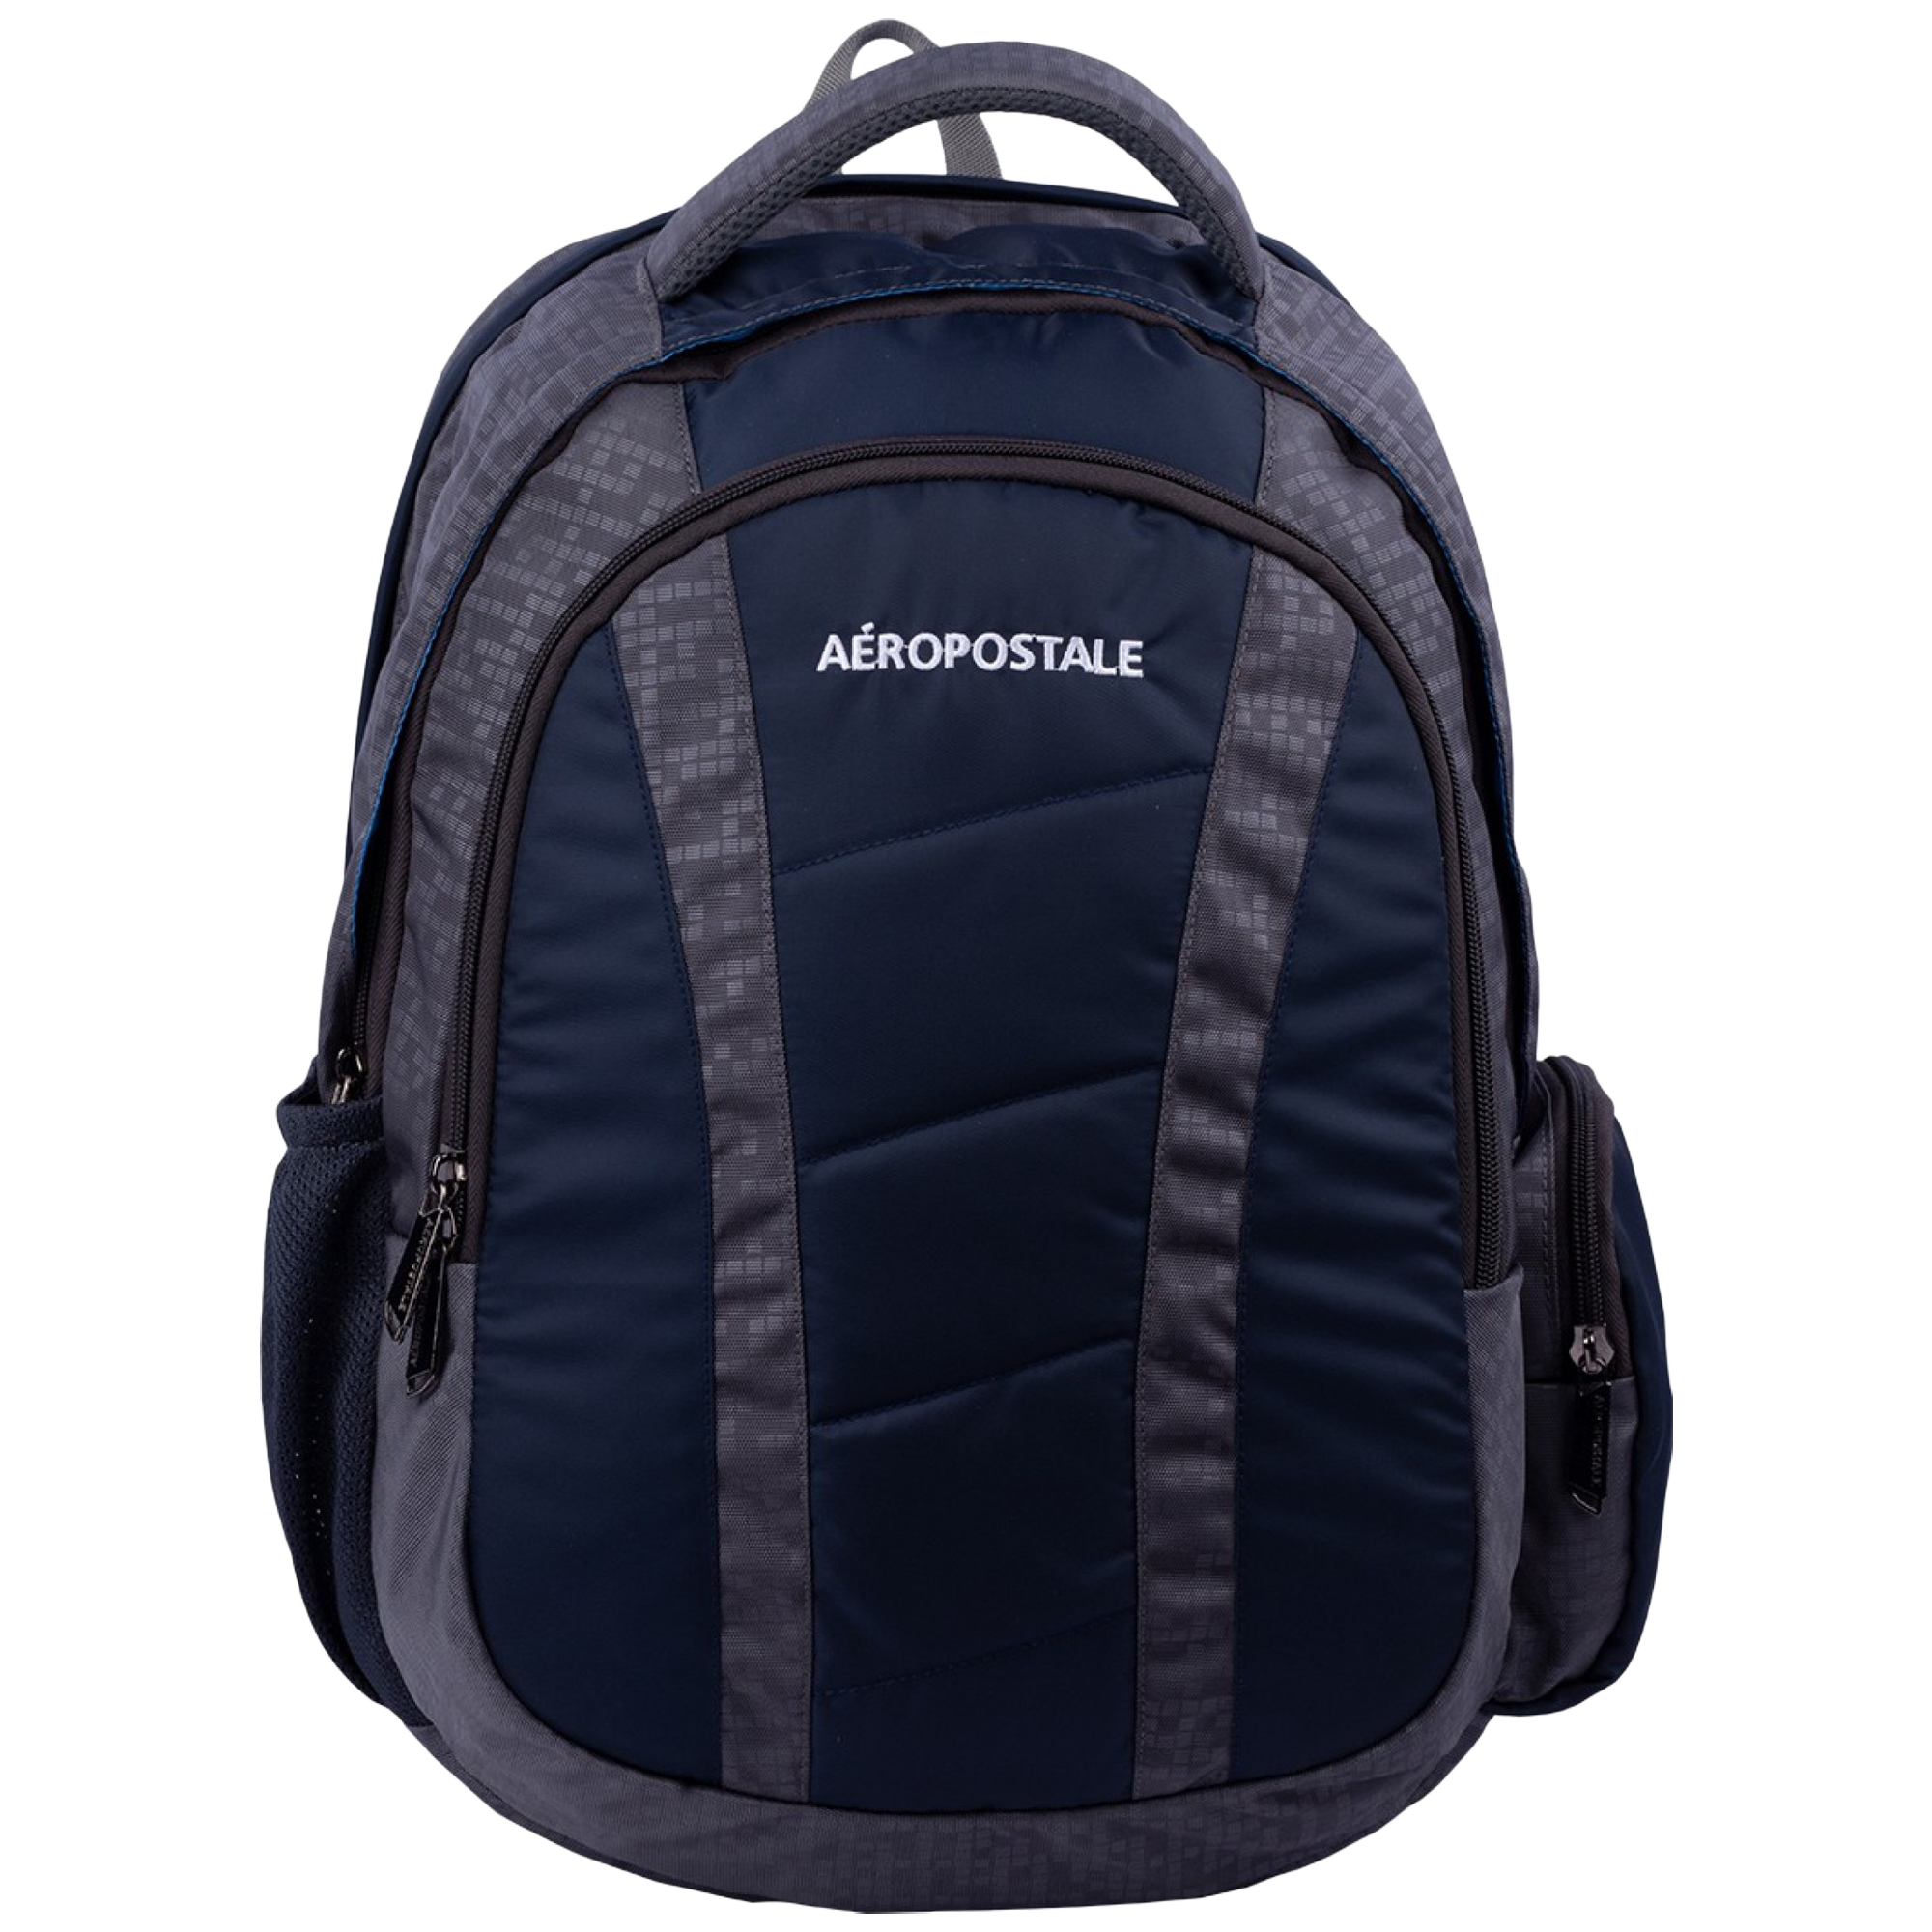 Aeropostale Wanderlust 30 Litres Polyester Backpack (Waterproof, AERO-BP-1008-GRY/N, Grey/Navy Blue)_1